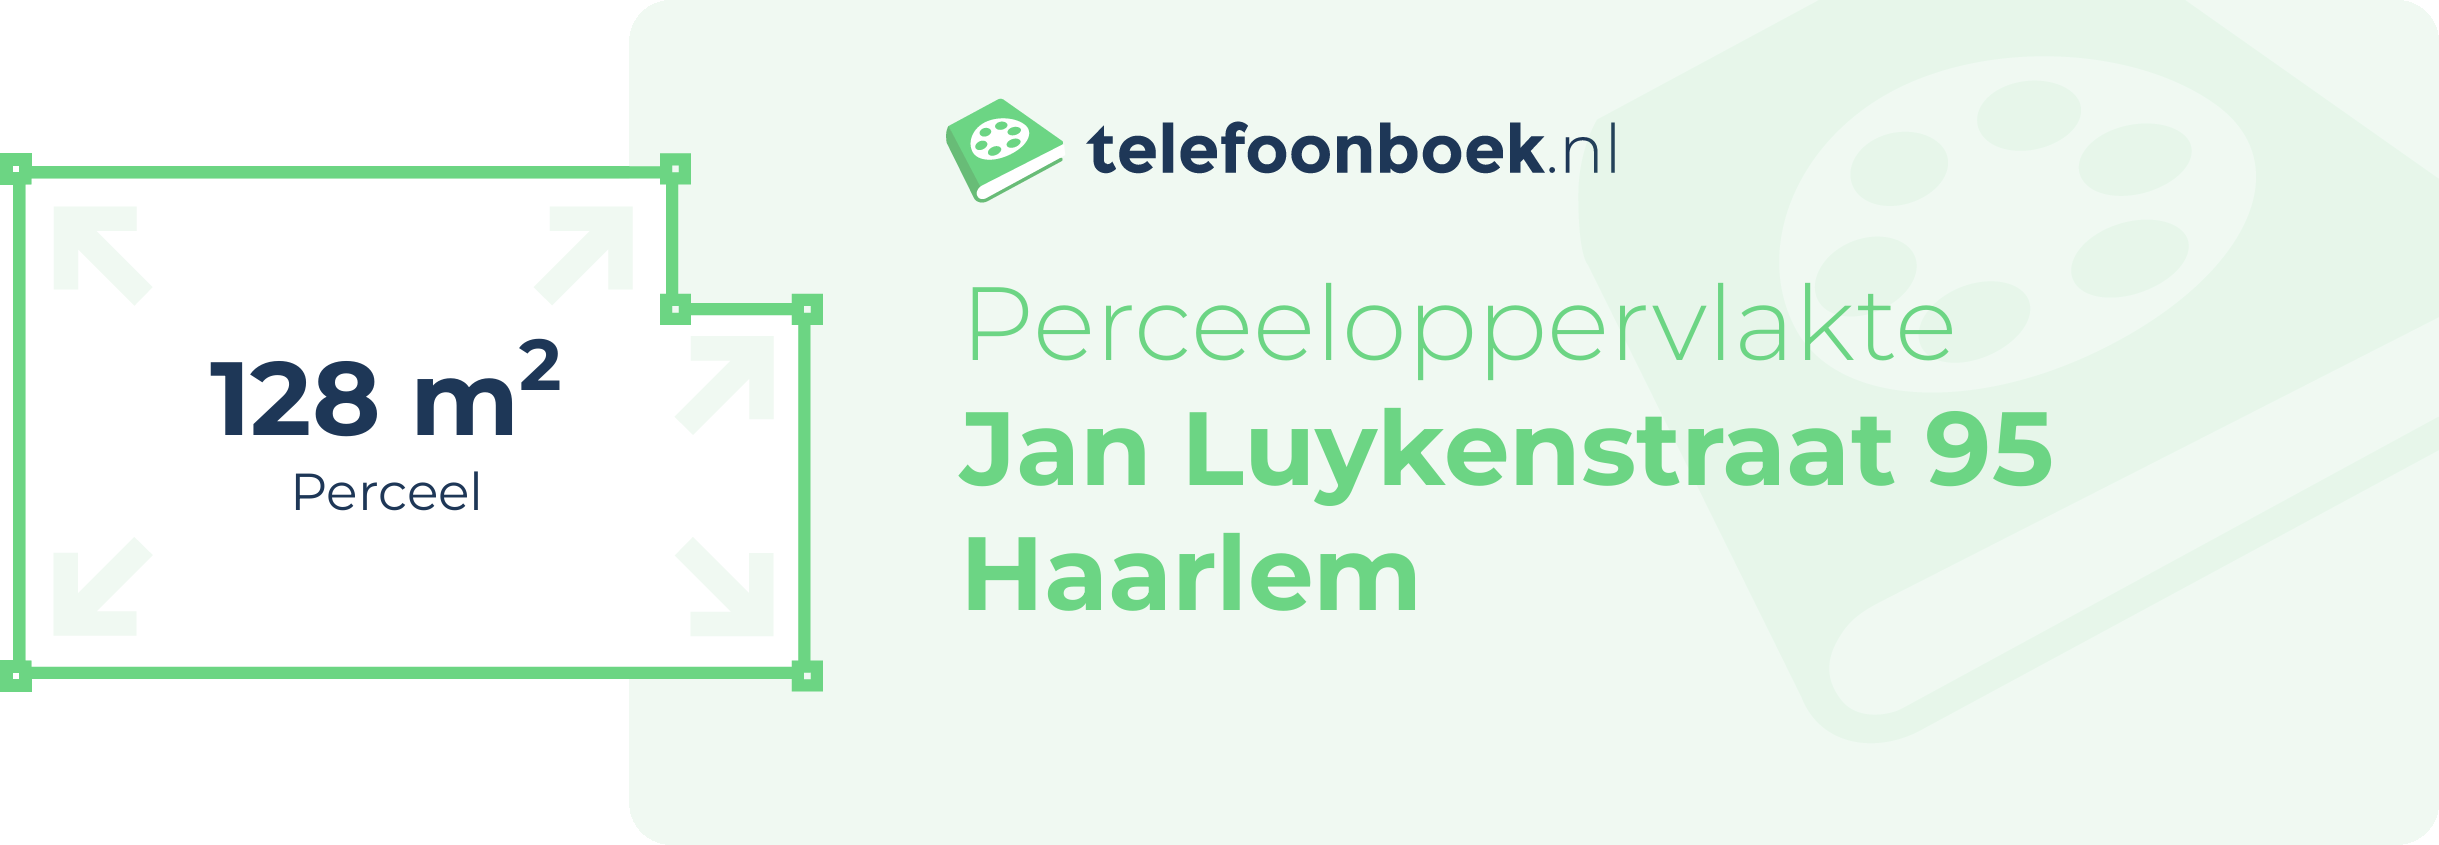 Perceeloppervlakte Jan Luykenstraat 95 Haarlem